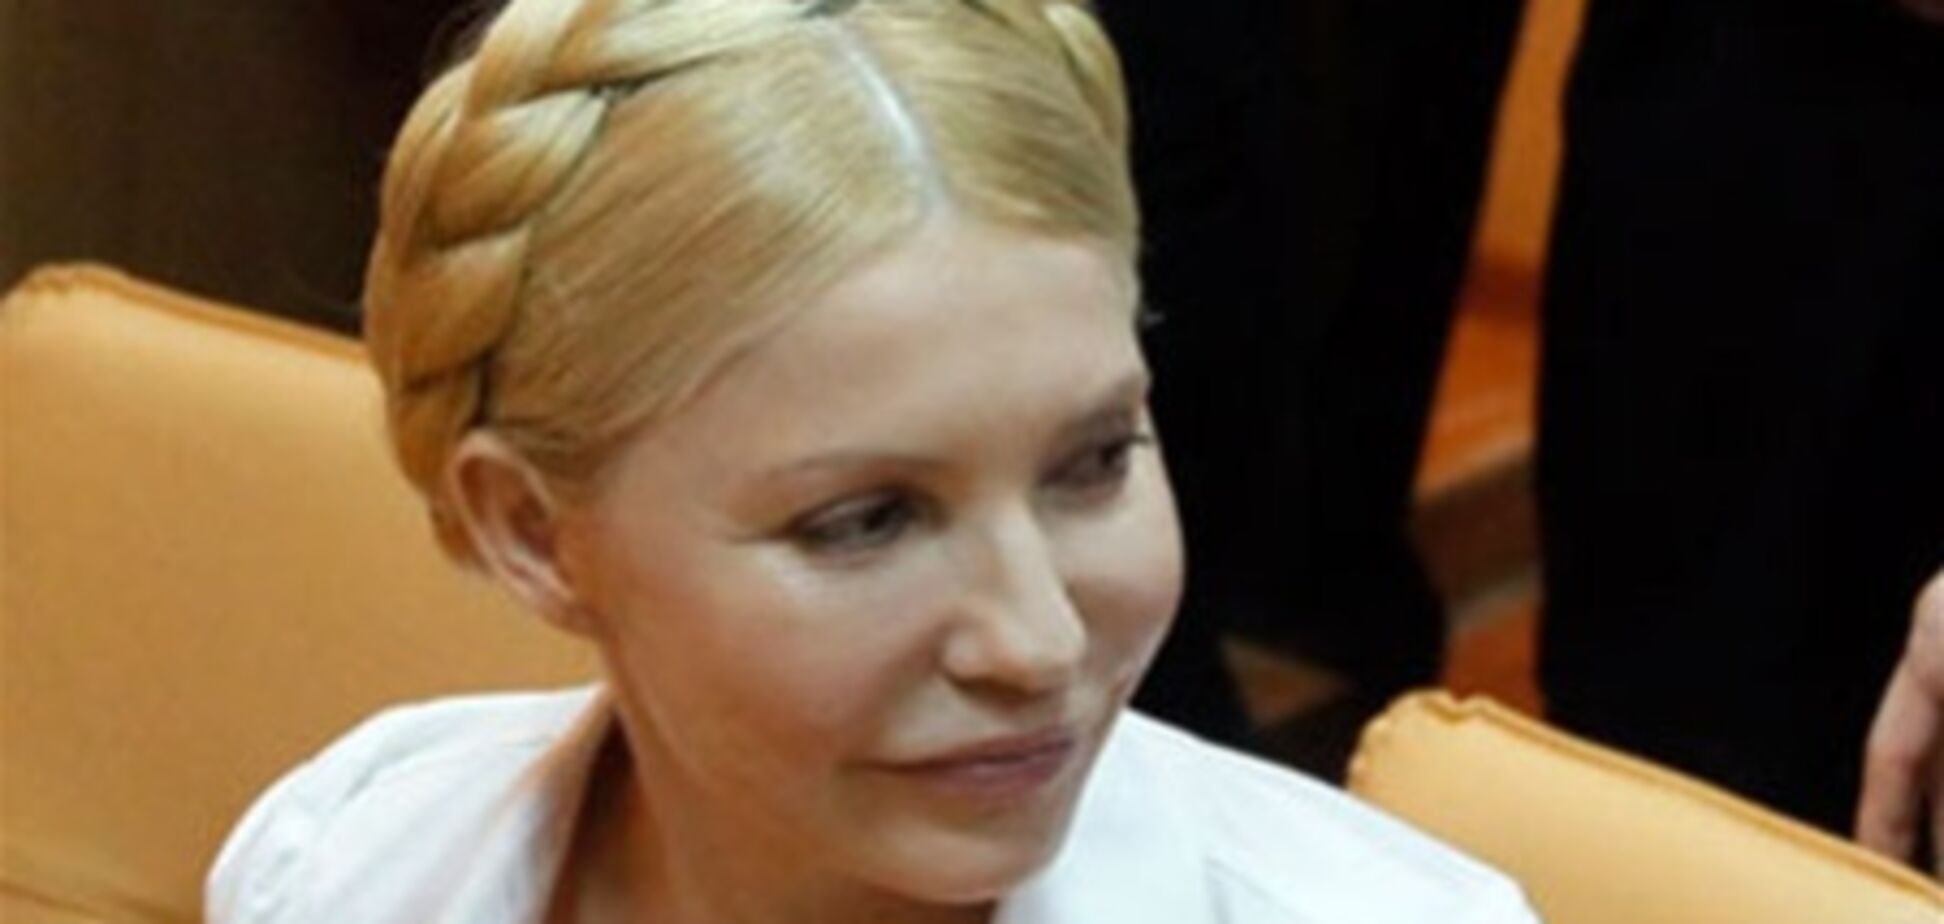 Колония подала документы для перевозки Тимошенко в Киев